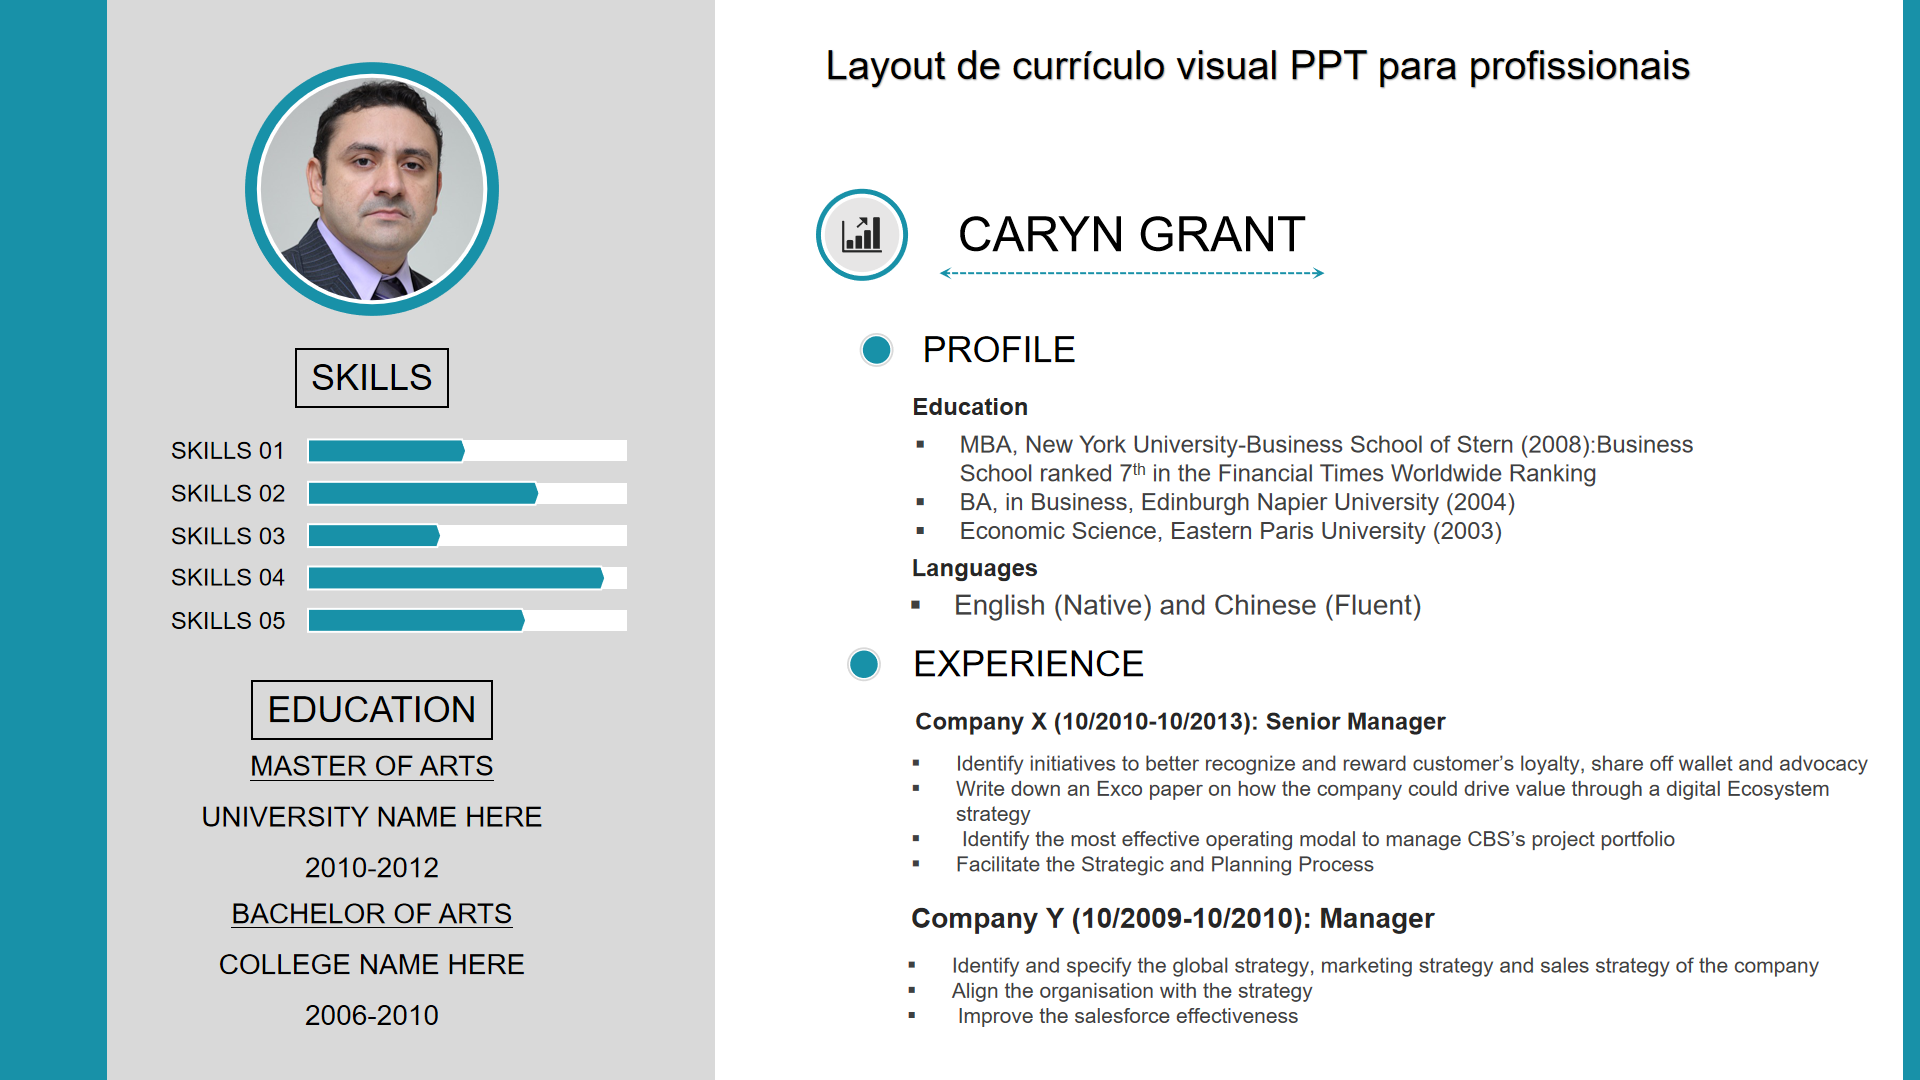 Layout de currículo visual PPT para profissionais